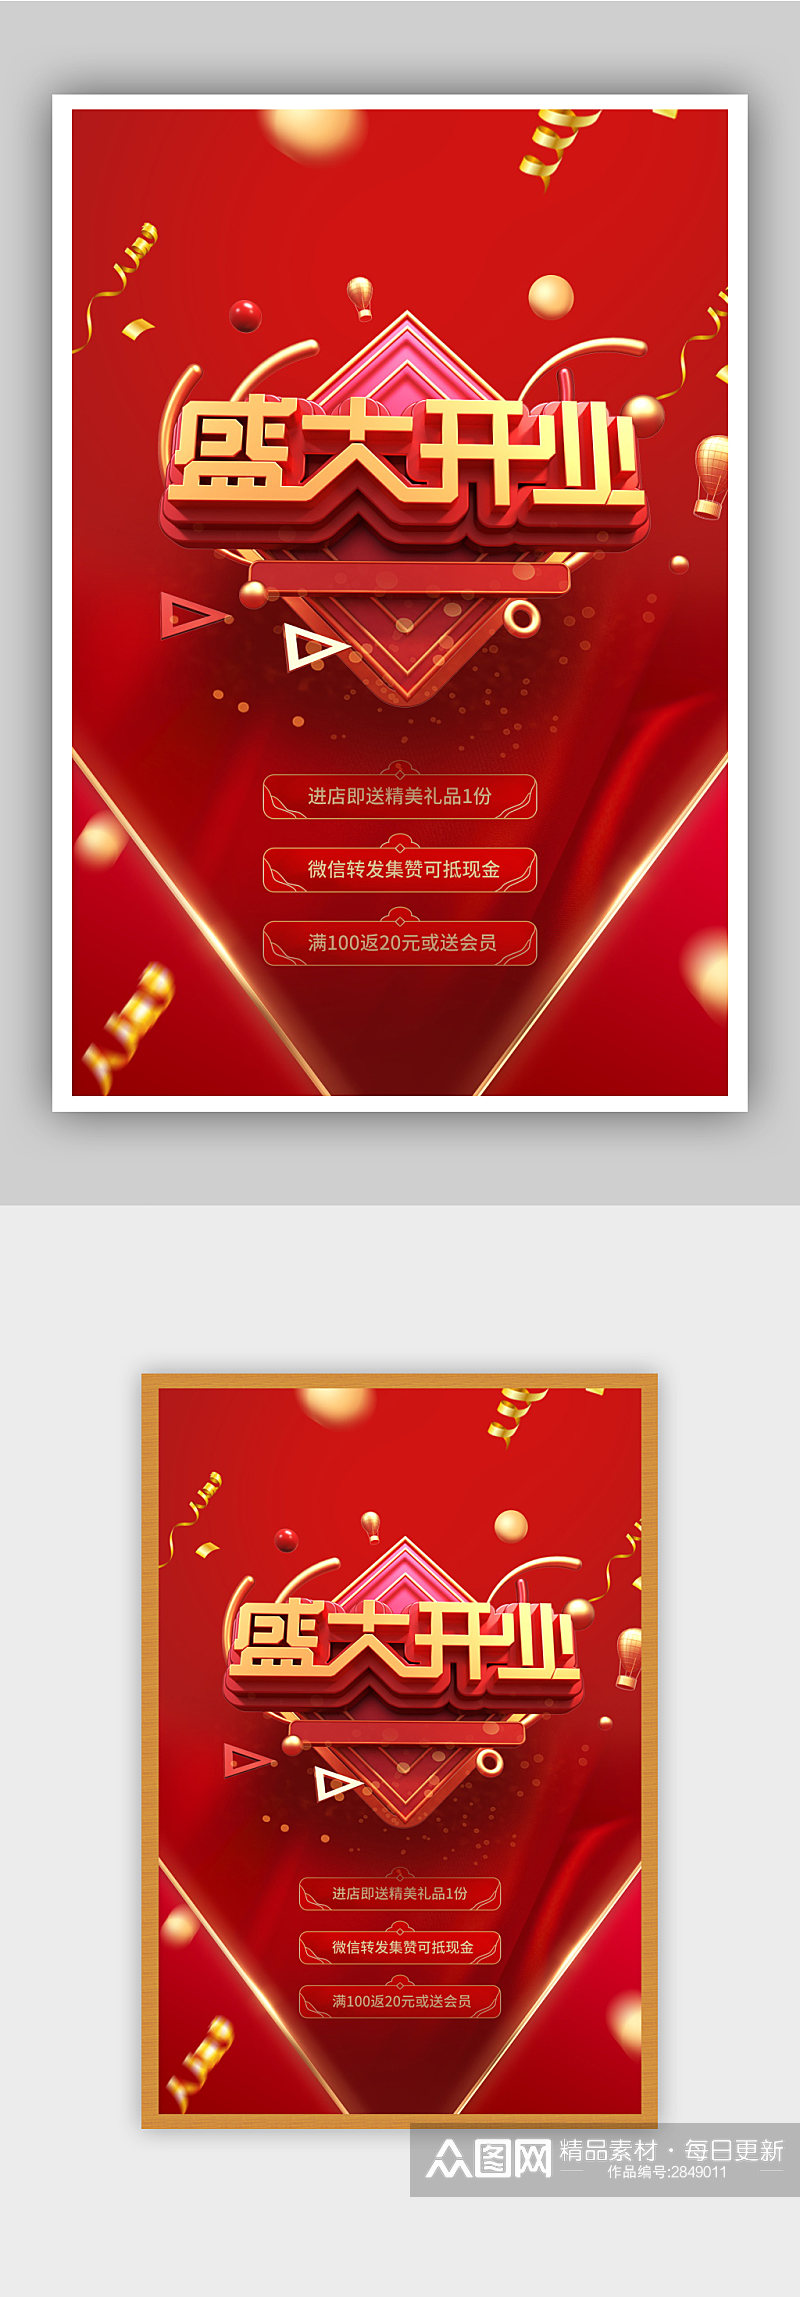 红色喜庆盛大开业促销活动海报素材